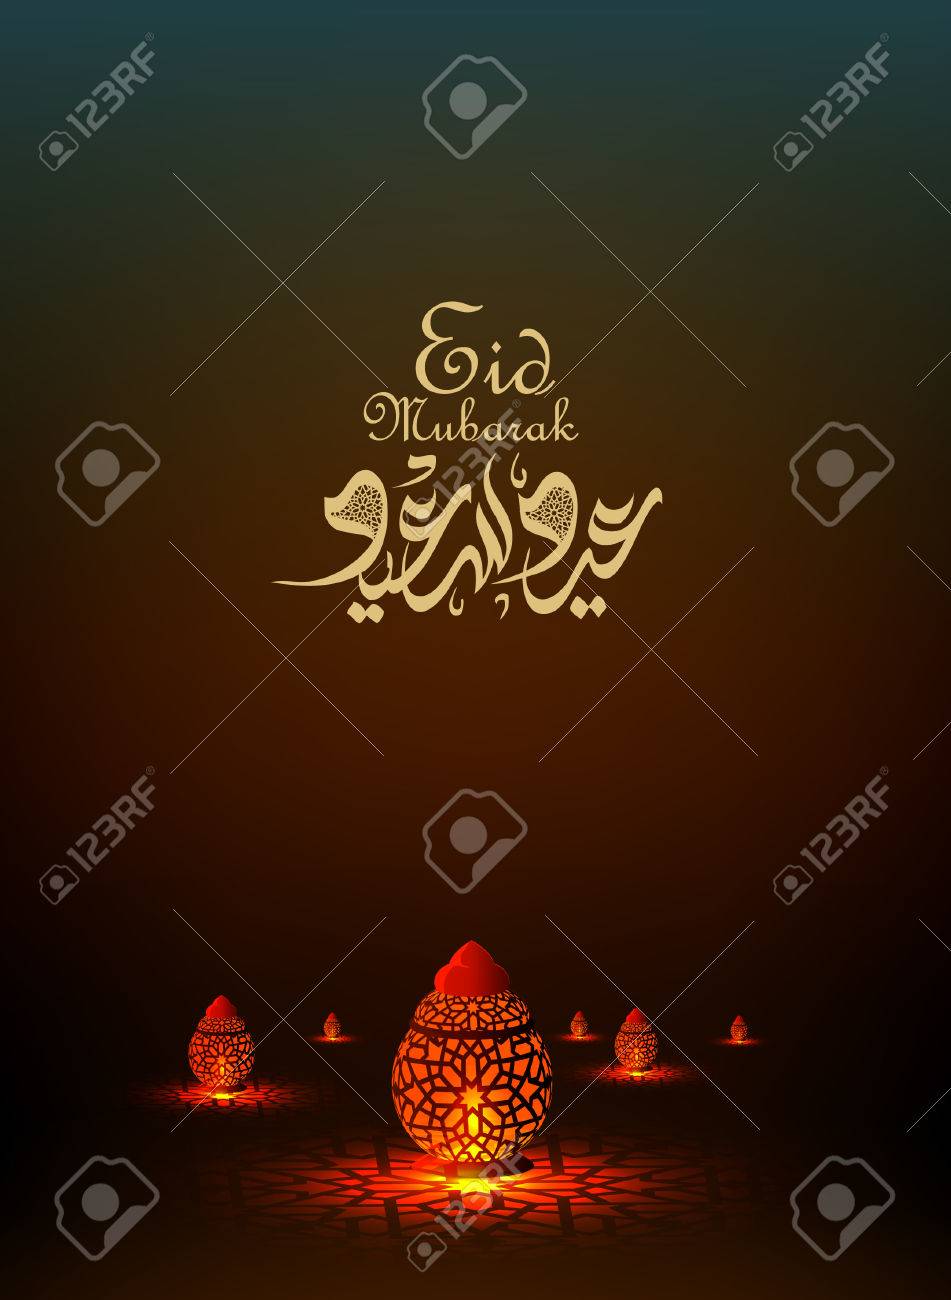 65676329--eid-mubarak-greeting-card-islamic-background-for-muslims-holidays-such-as-eid-al-fitr-eid-al-adha-a.jpg